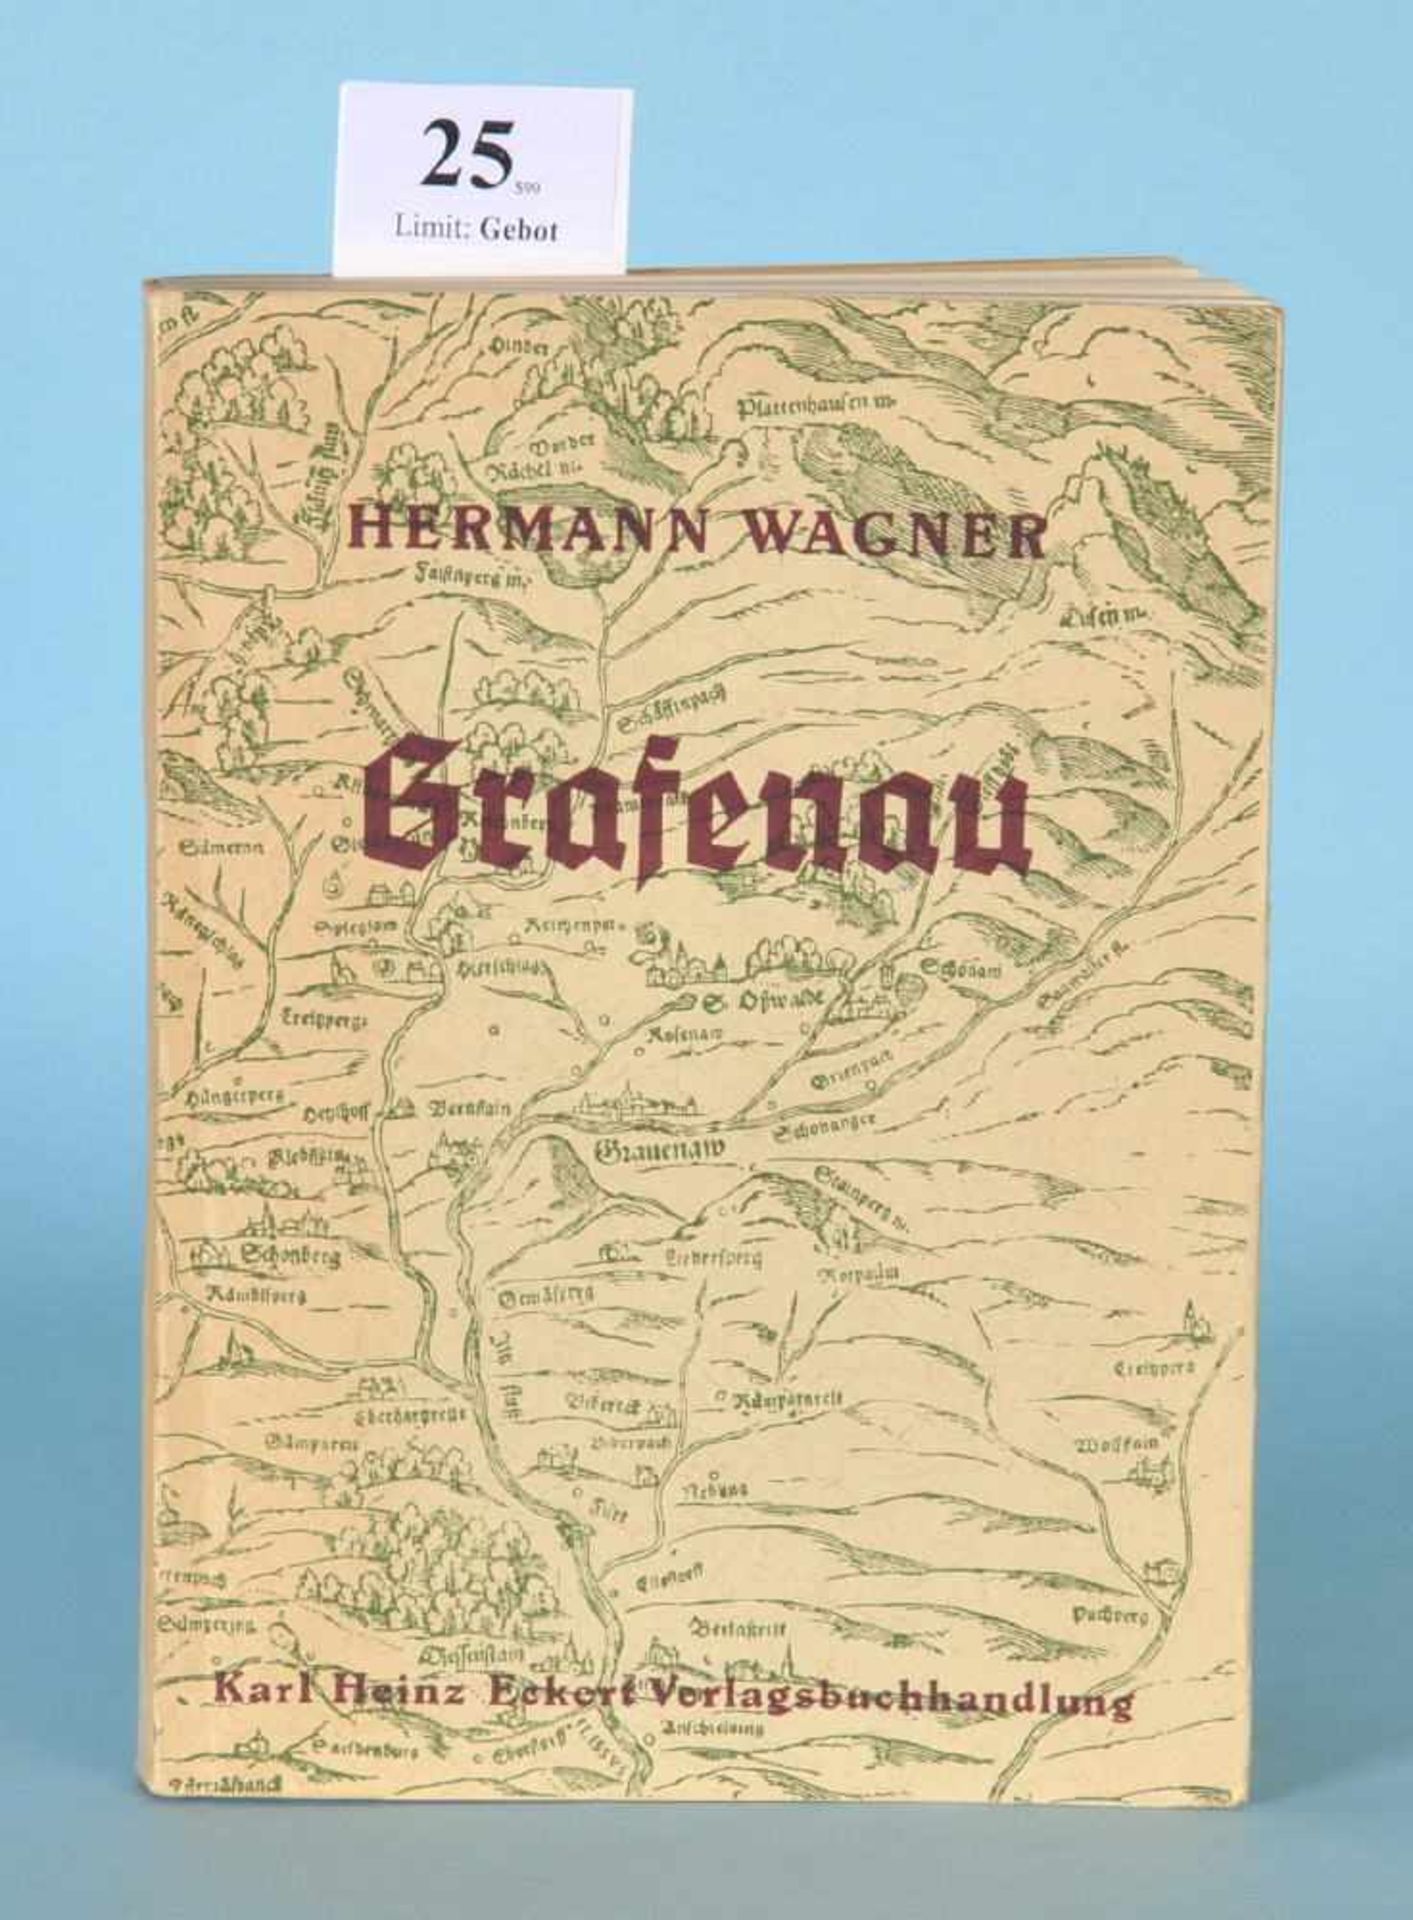 Wagner, Hermann "Grafenau - Geschichte der Stadt und...""...ihrer Guldenstraße samt einer Chronik